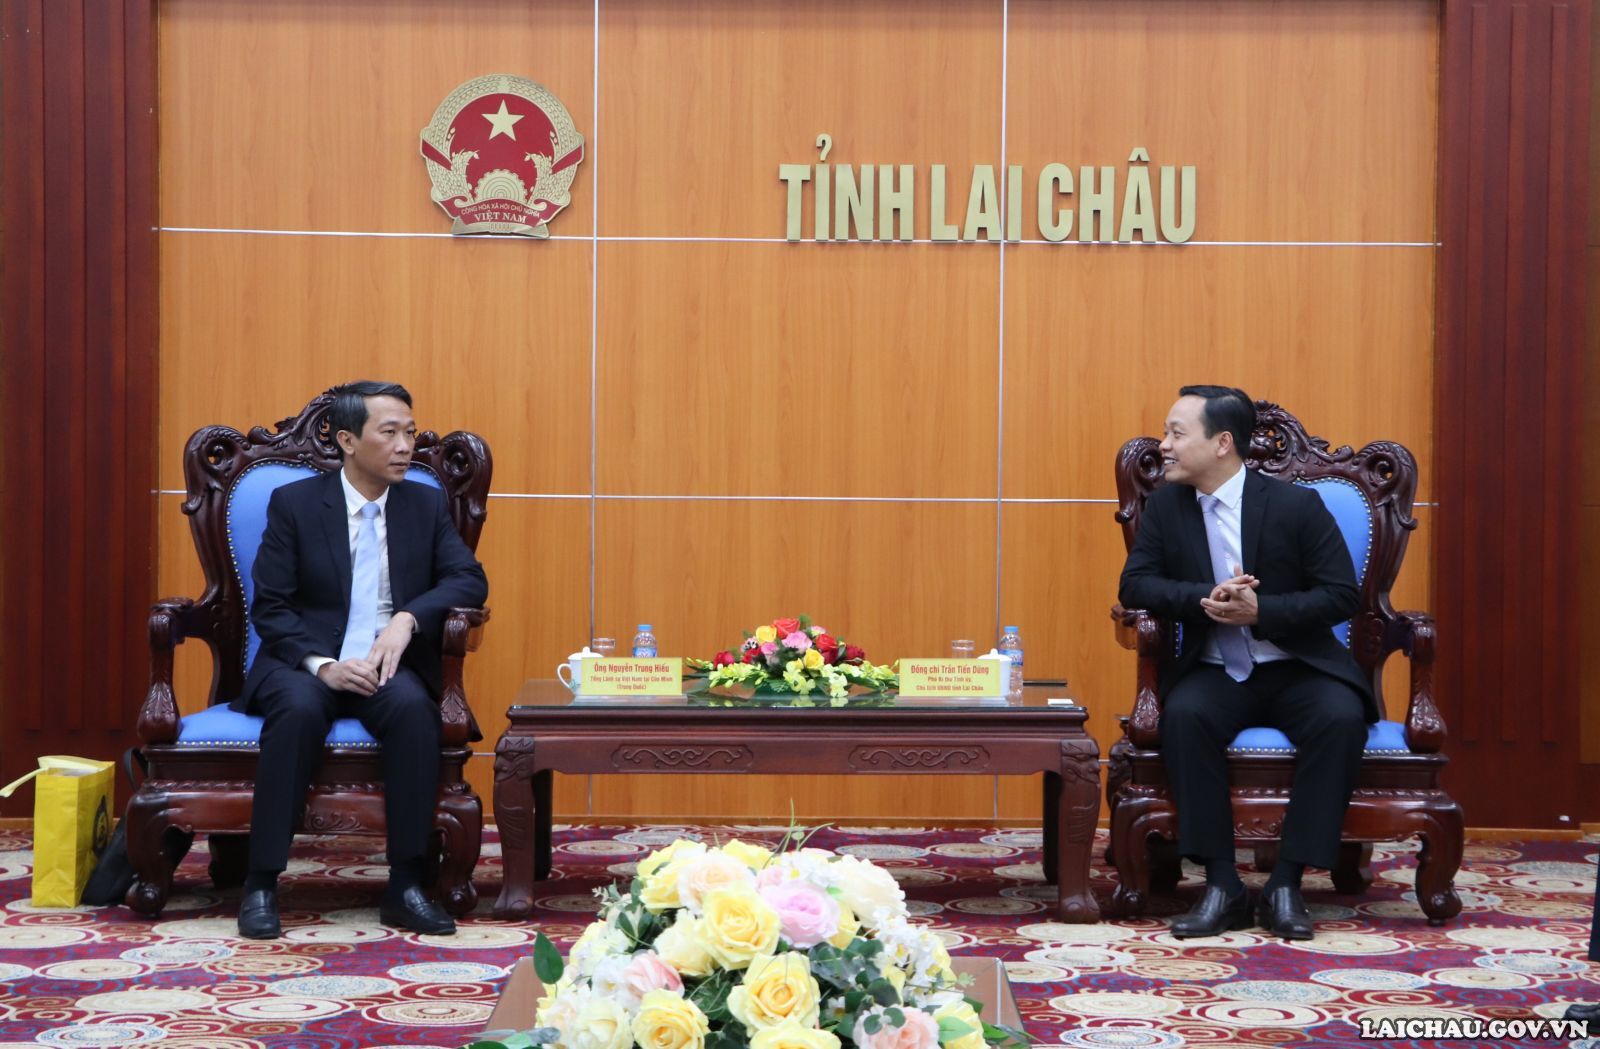 Chủ tịch UBND tỉnh Trần Tiến Dũng tiếp xã giao Tổng Lãnh sự Việt Nam tại Côn Minh (Trung Quốc)